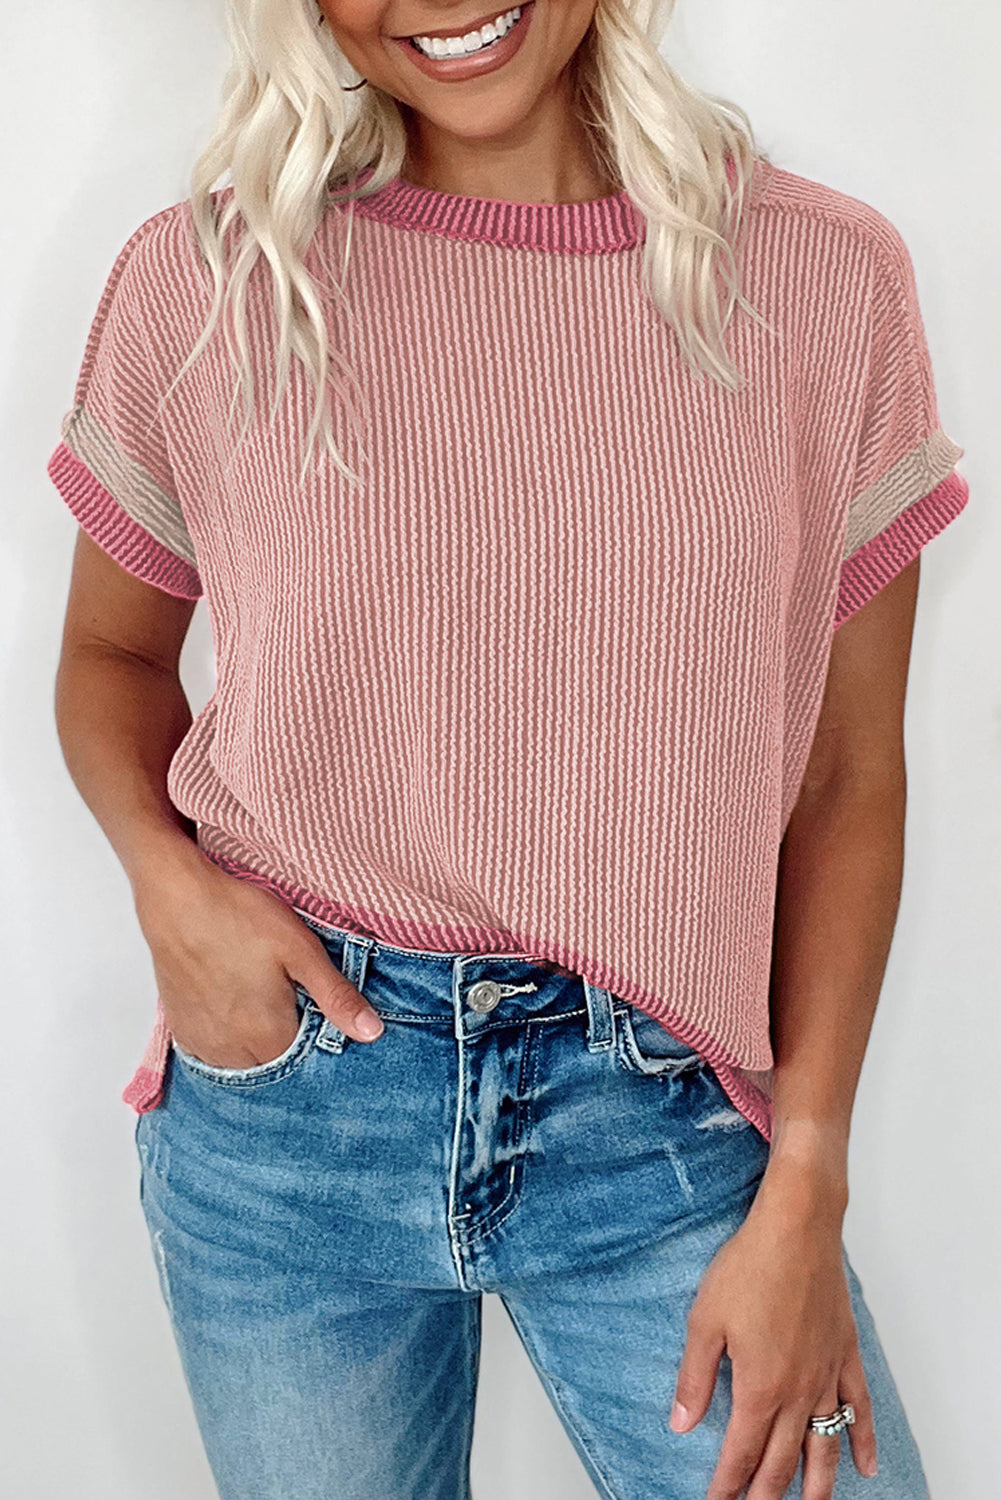 T-shirt girocollo con finiture a contrasto testurizzate rosa brillante